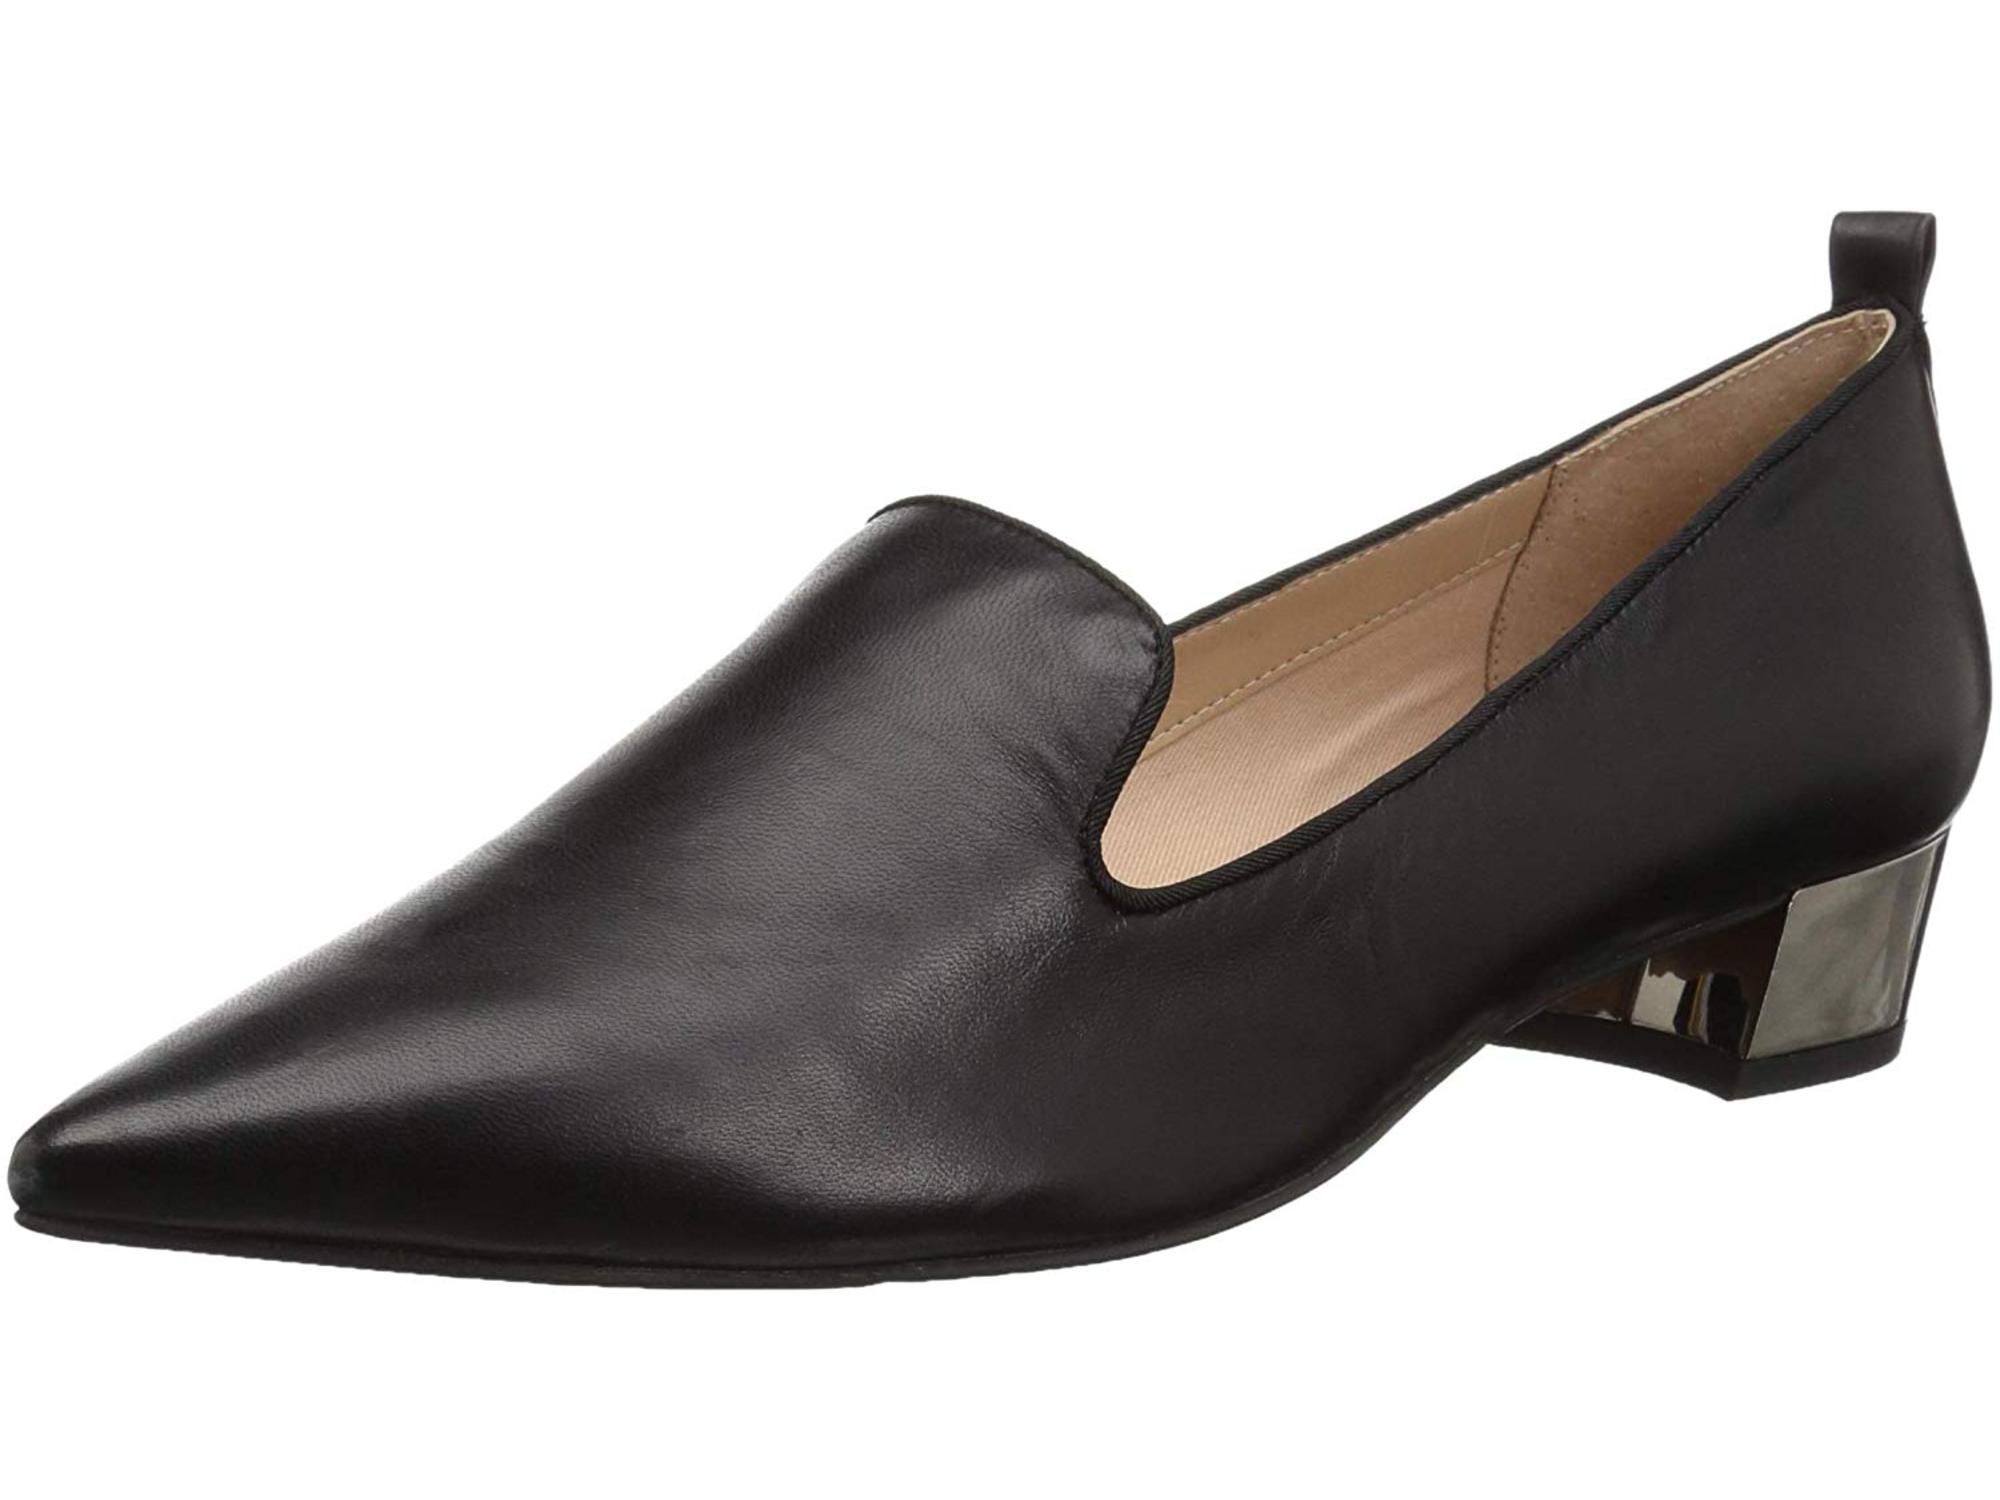 超ポイント祭?期間限定 Franco Sarto  フランコサルト シューズ ローファー  新規出品Franco Womens Vianna  B M  Loafers 8.5 Medium  Black Leather Heel